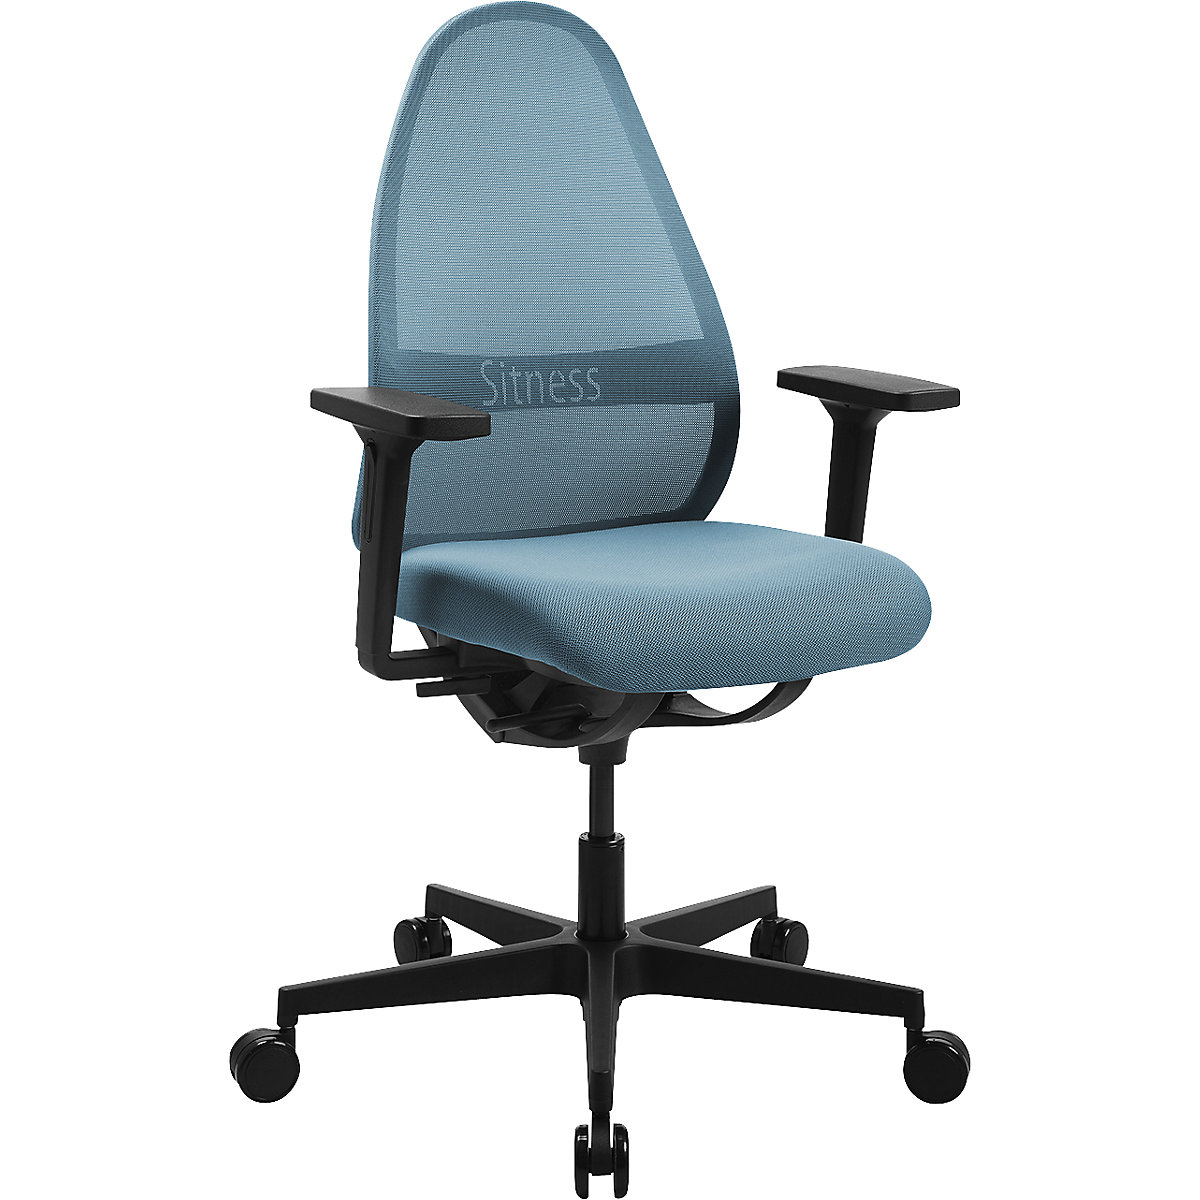 Cadeira giratória de escritório SOFT SITNESS ART - Topstar